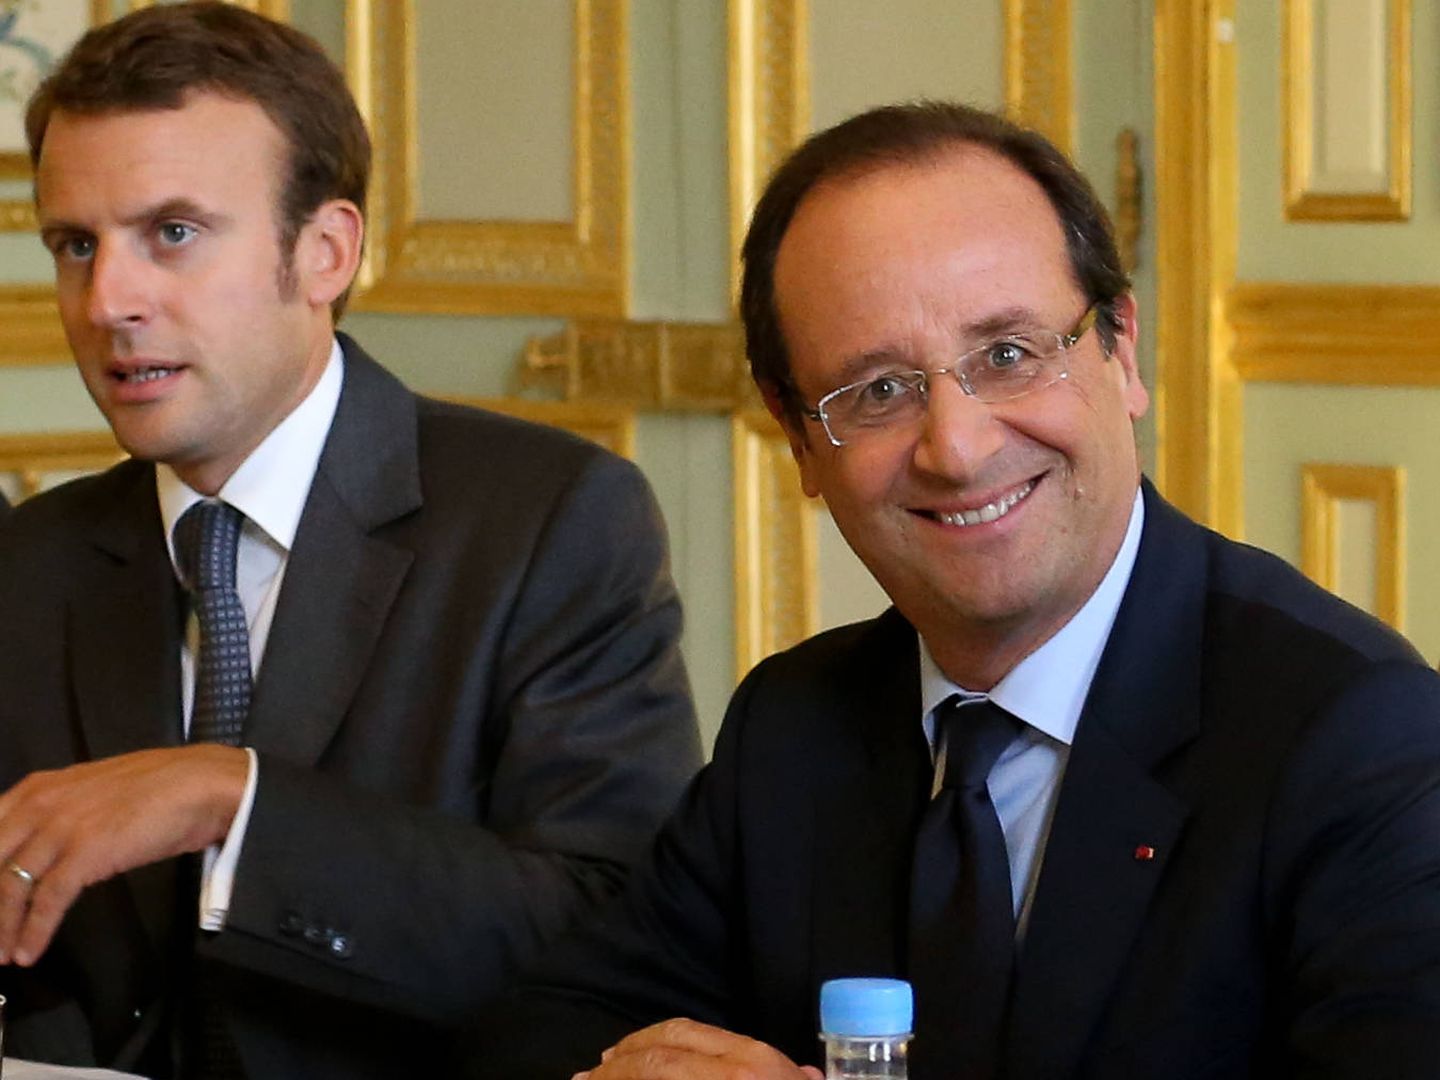 Brigitte Trogneux junto al presidente Hollande (Gtres)